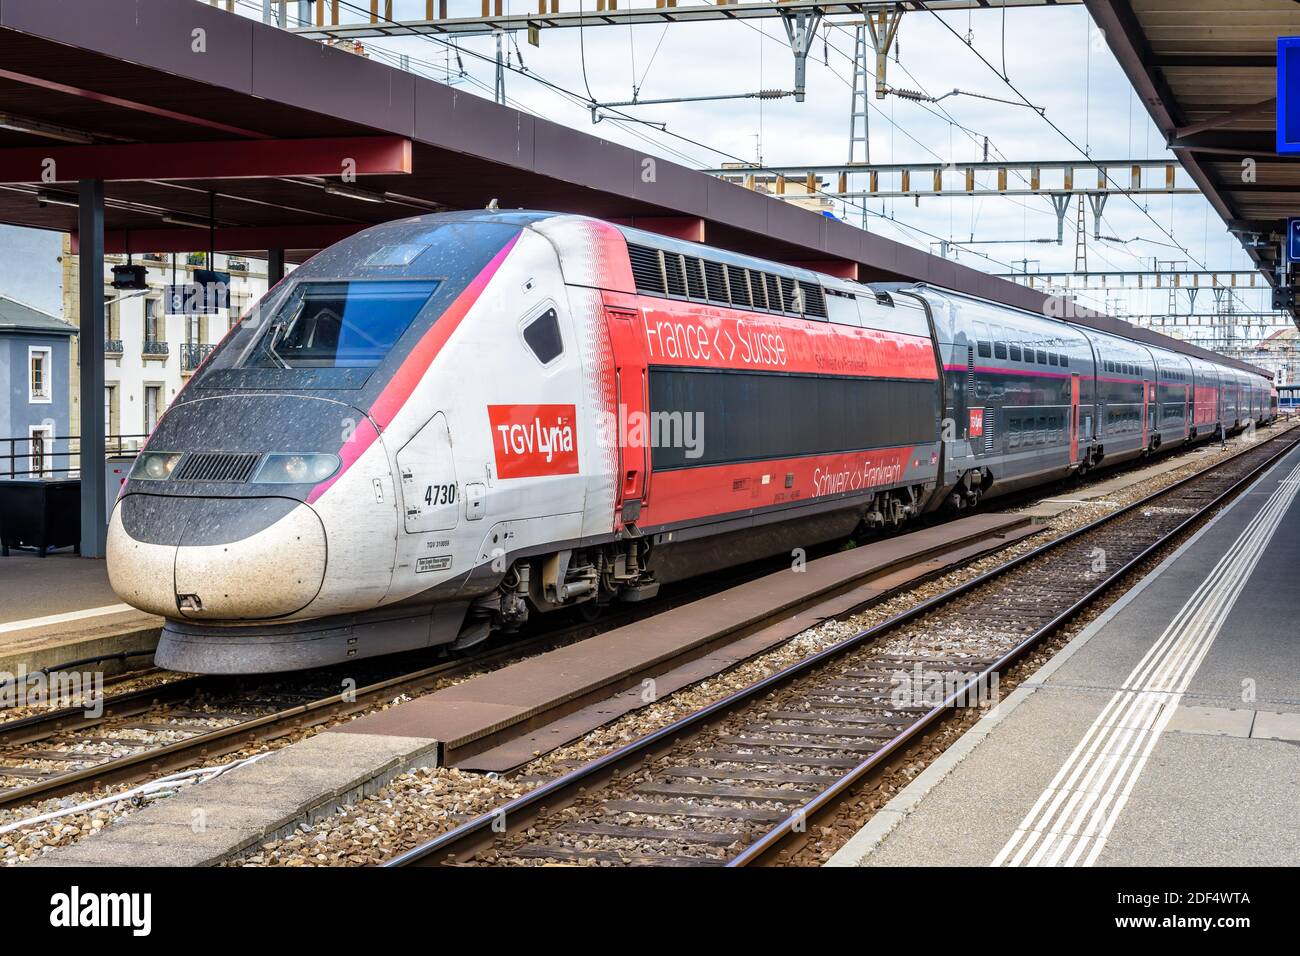 Ein TGV Lyria Duplex Hochgeschwindigkeitszug in der Farbgebung 2019, der Frankreich und die Schweiz verbindet, hält am Bahnhof Genf-Cornavin. Stockfoto